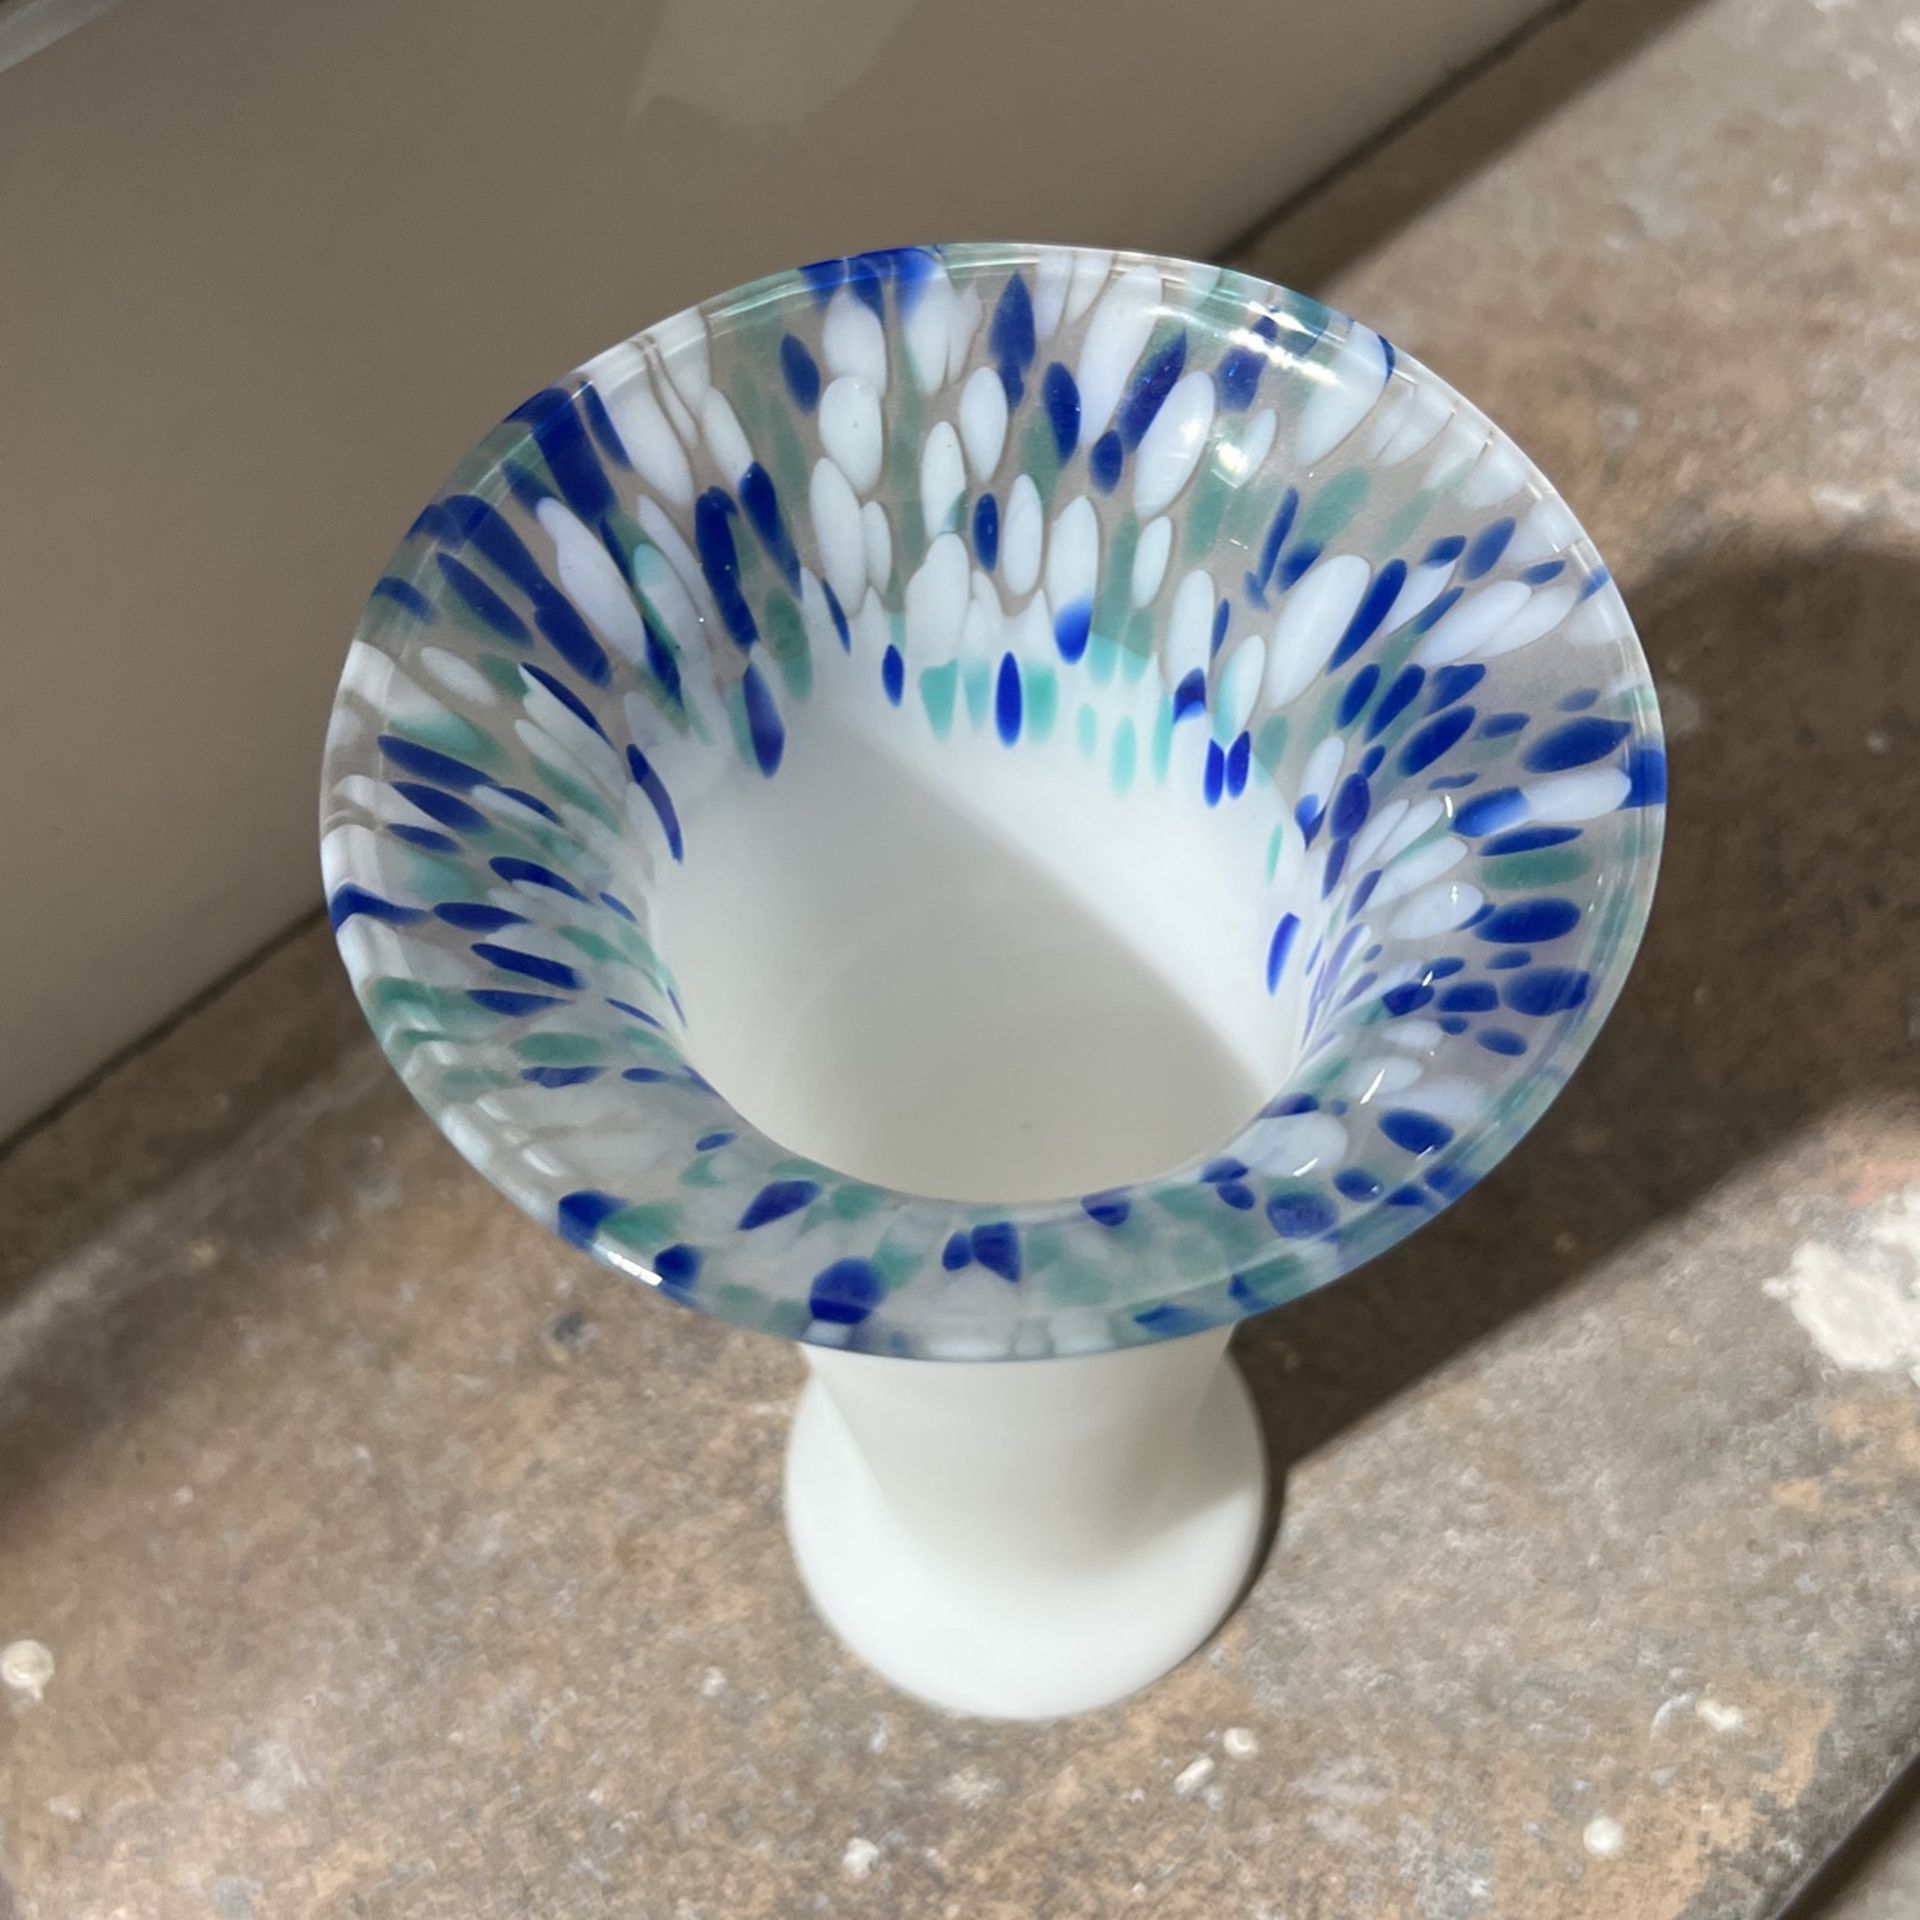 Flower Vase Glass